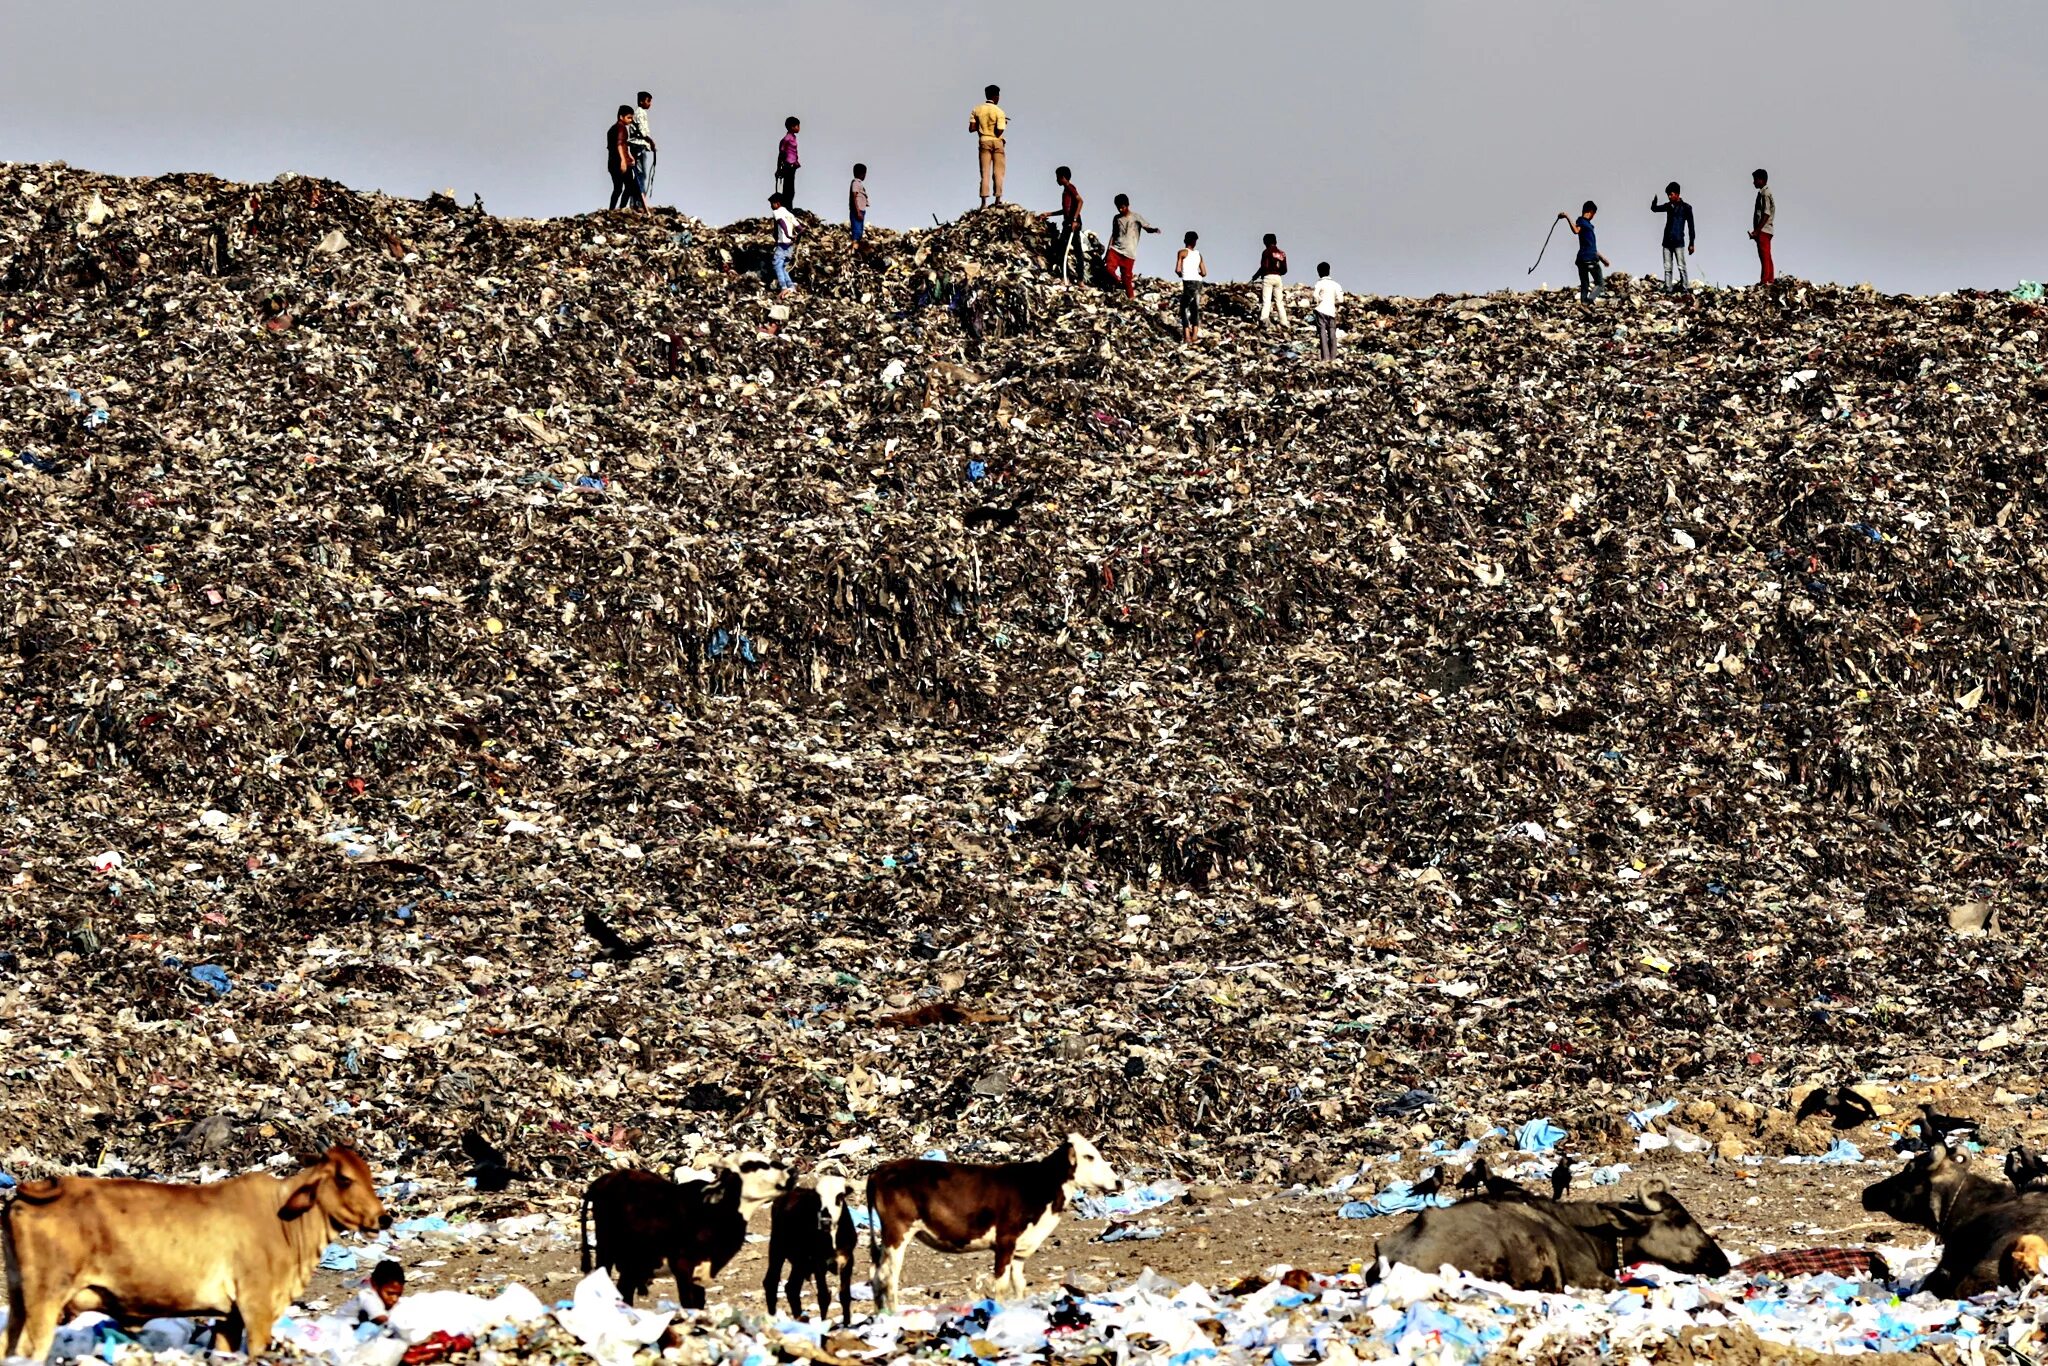 Свалка Deonar, Мумбаи, Индия. Самый большой мусорный полигон в мире. Свалка Deonar, Мумбаи, Индия (132 гектара). Мусорная мусорка